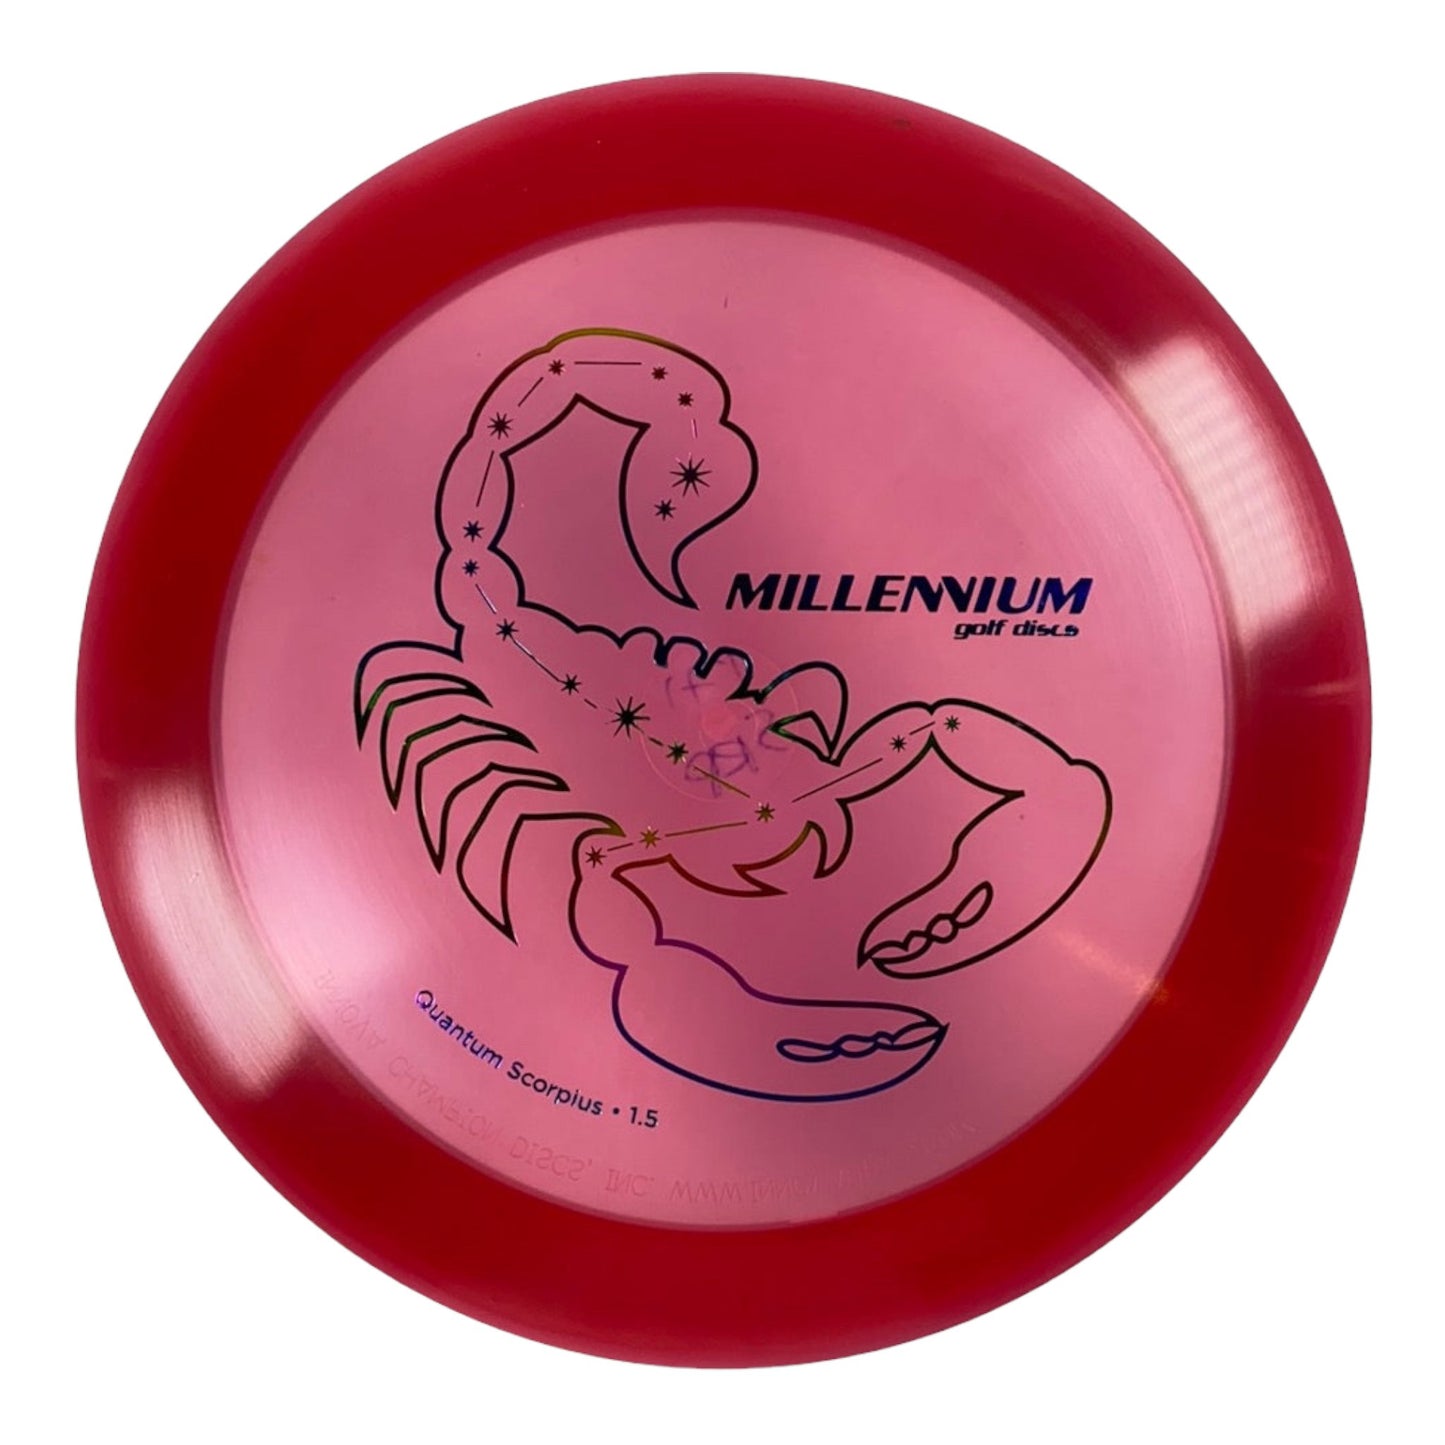 Millennium Golf Discs Scorpius | Quantum | Red/Rainbow 171g Disc Golf